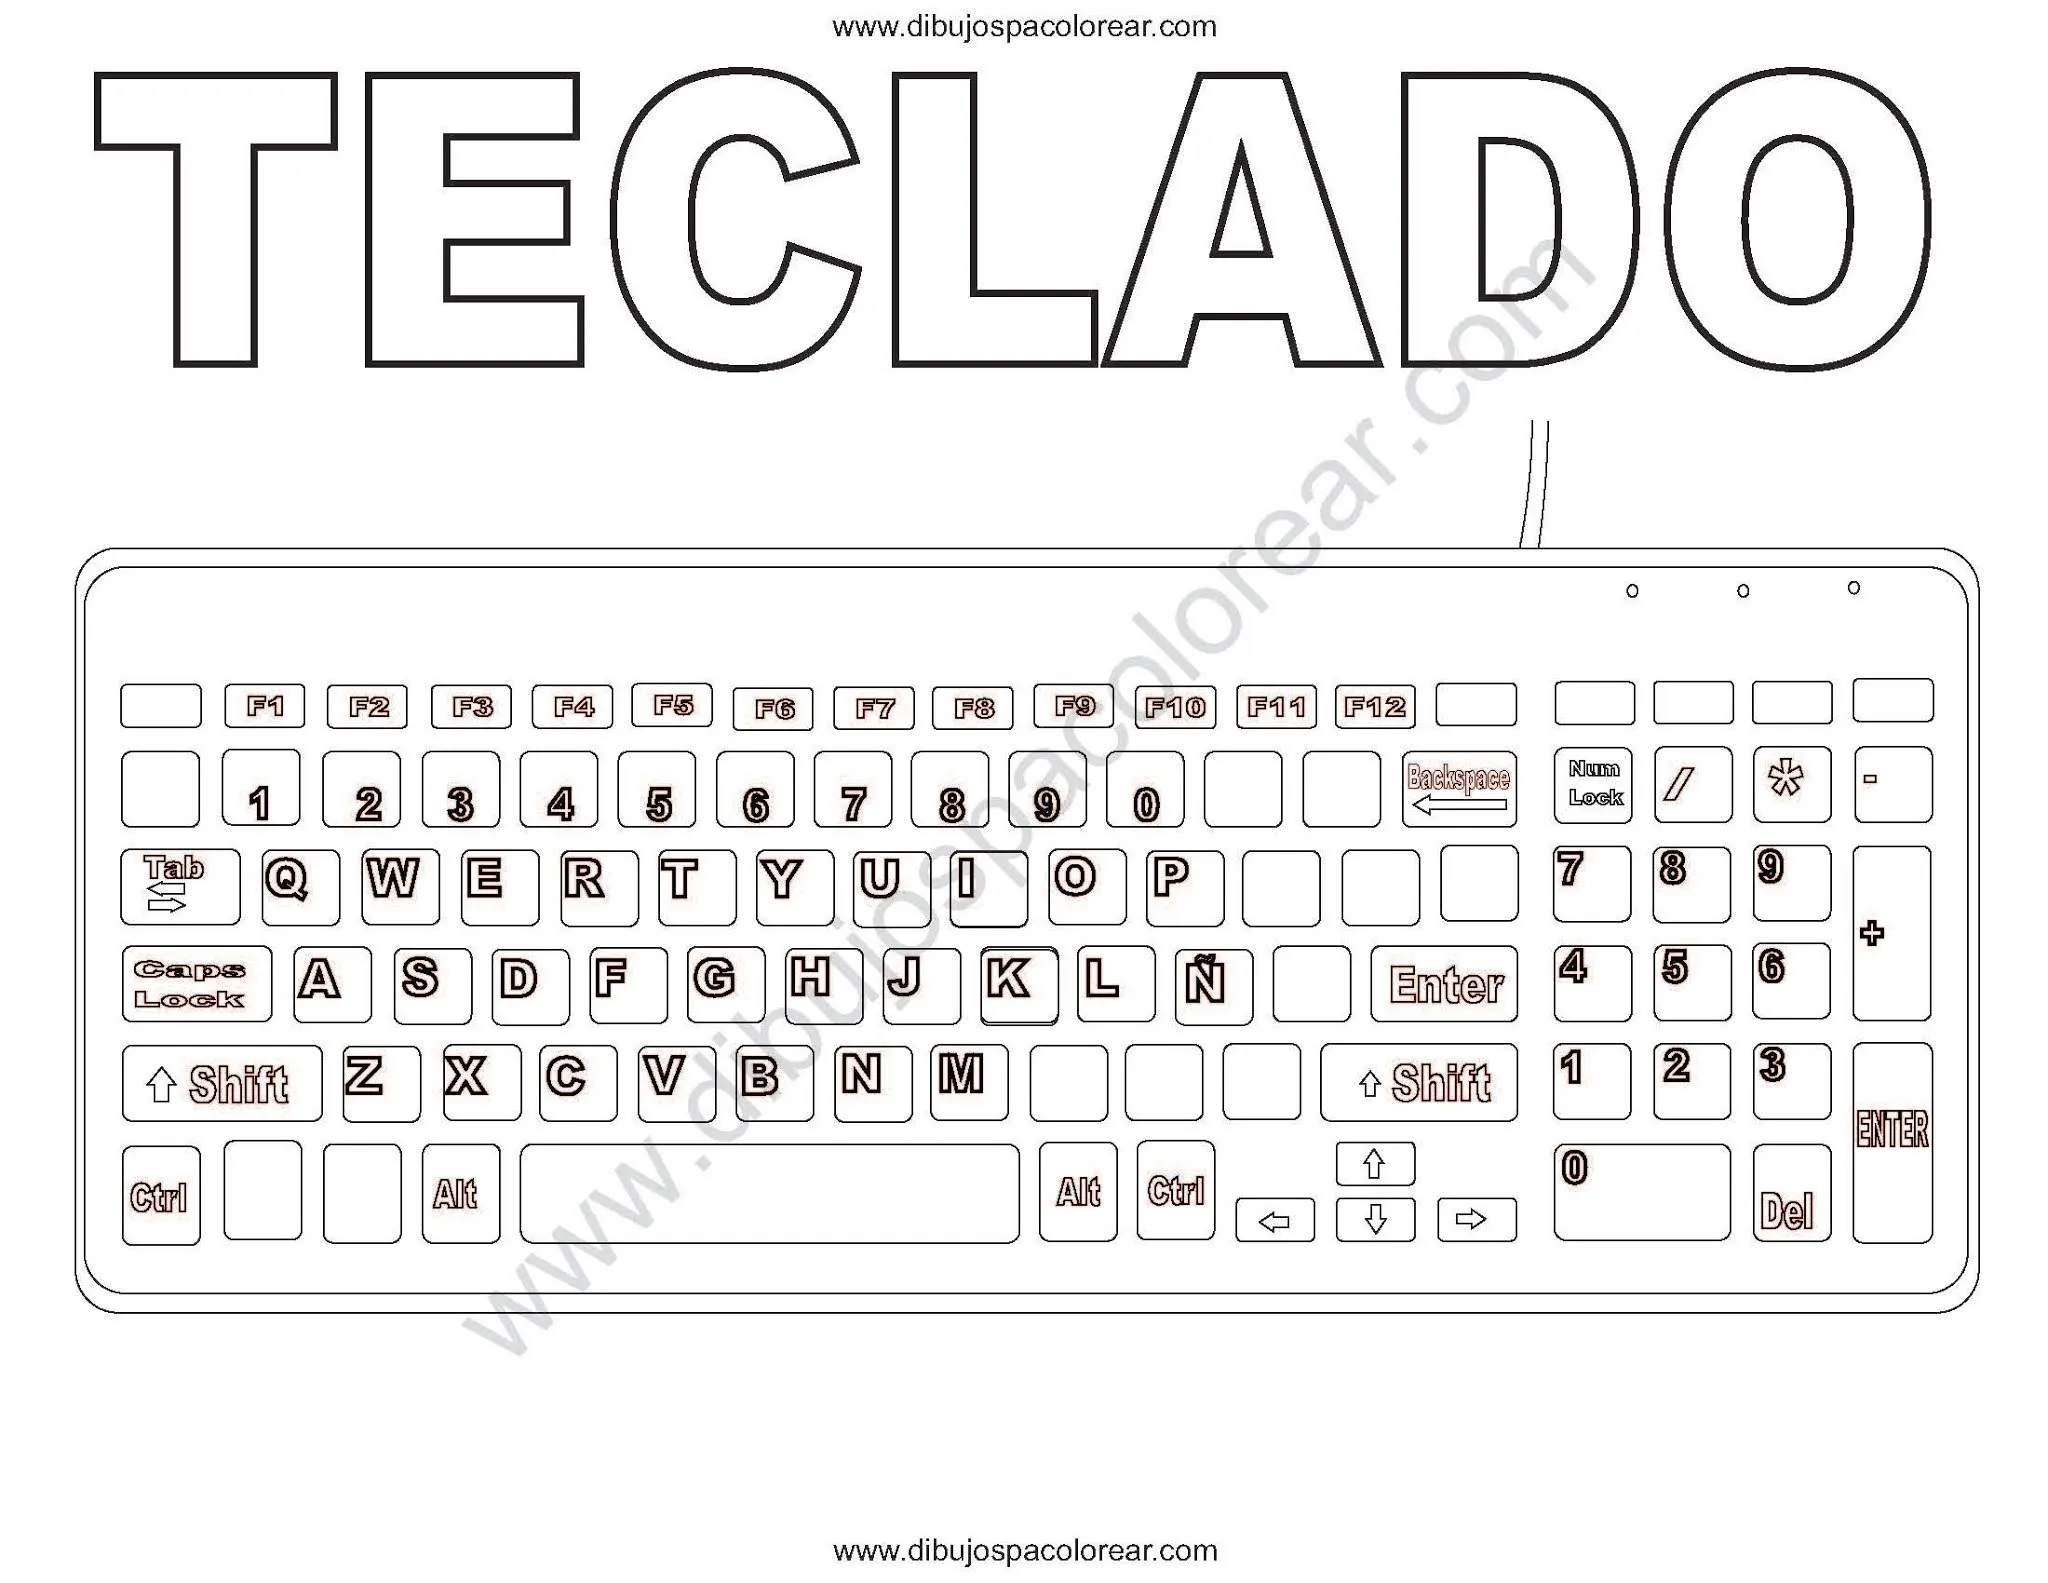 Dibujos de teclado de computadora para colorear con letras y sin letras